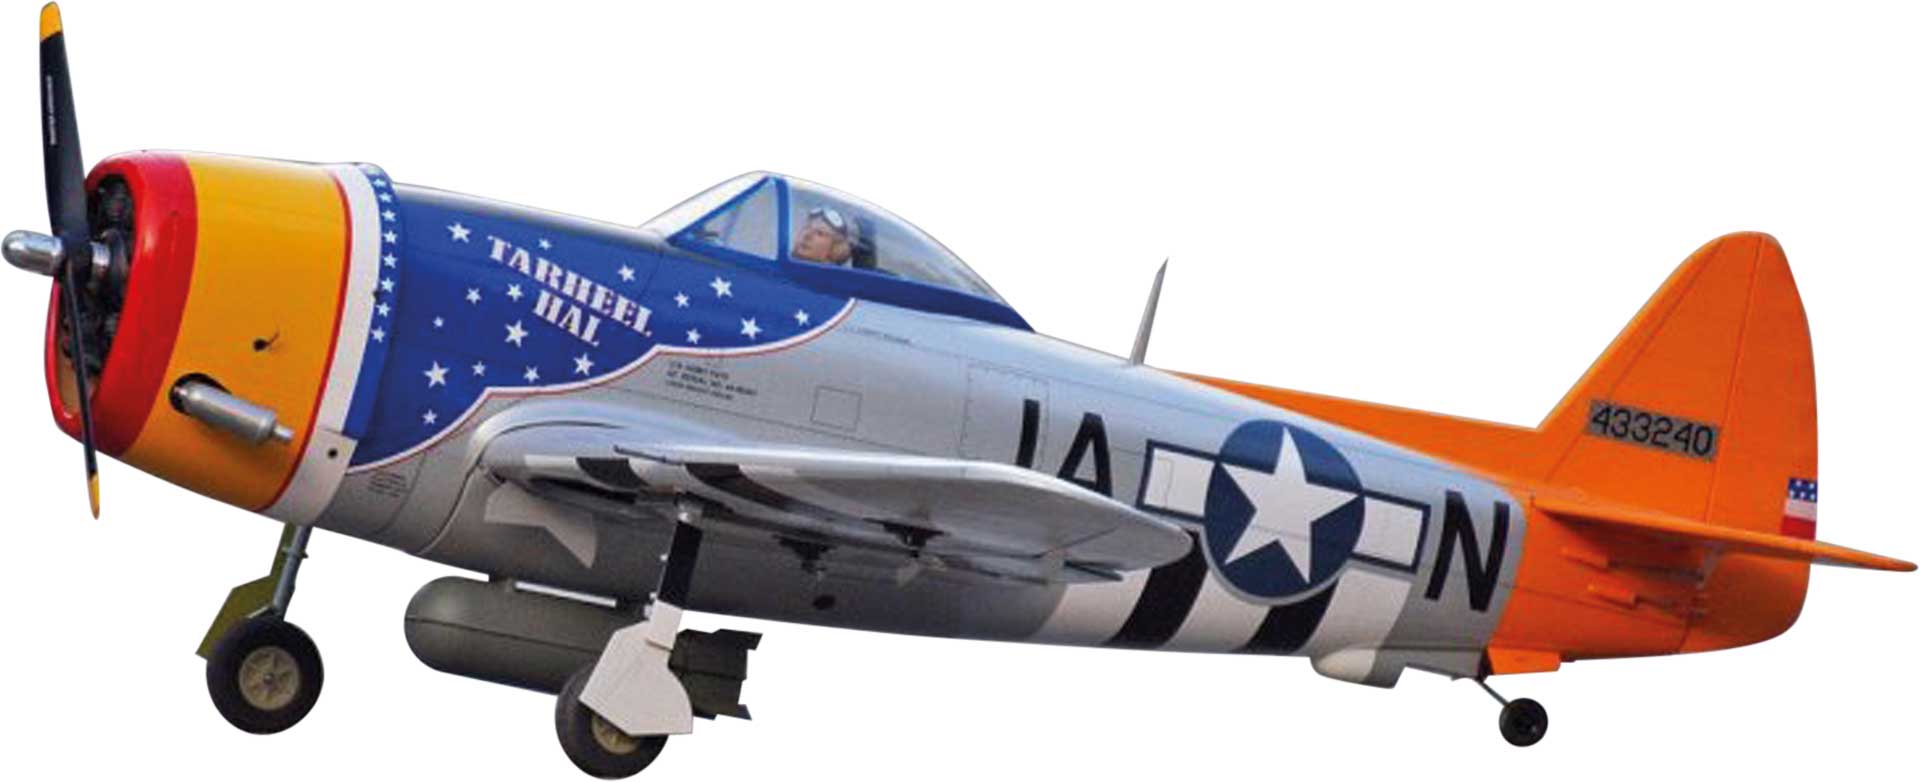 VQ Models P-47D Thunderbolt (Tarheel Hal) / 1500mm ARF Warbird